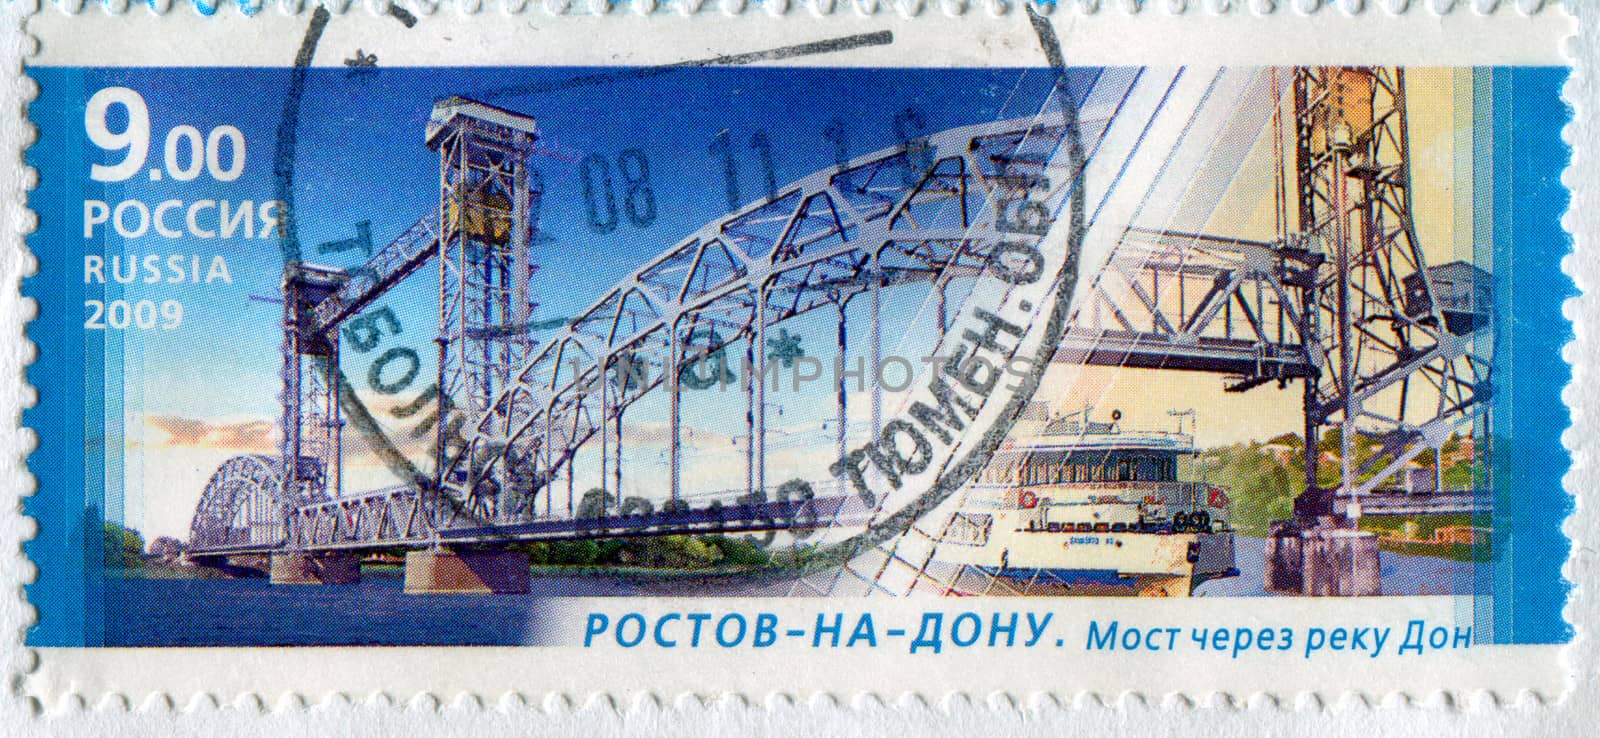 RUSSIA - CIRCA 2009: stamp printed by Russia, shows Bridge over Don, Rostov-na-Donu, circa 2009